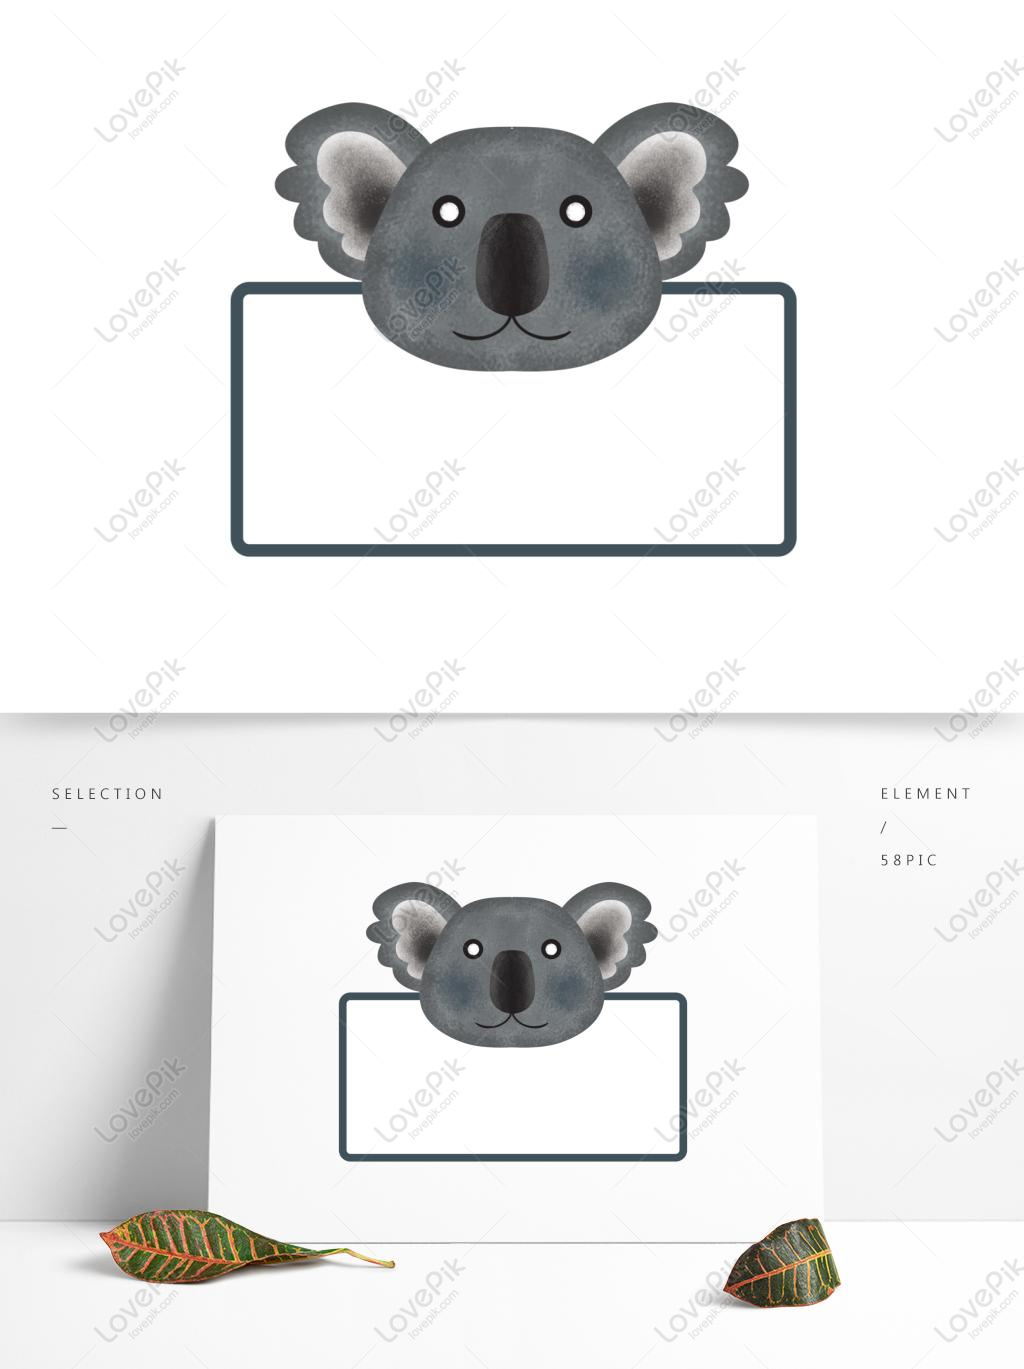 Từ bức tranh vẽ tay đến biểu tượng PNG ngộ nghĩnh, bạn sẽ thích mê những hình ảnh chú gấu túi dễ thương. Chúng tôi cung cấp cho bạn một bộ sưu tập các biểu tượng và hình ảnh chú gấu túi với nhiều phong cách khác nhau.